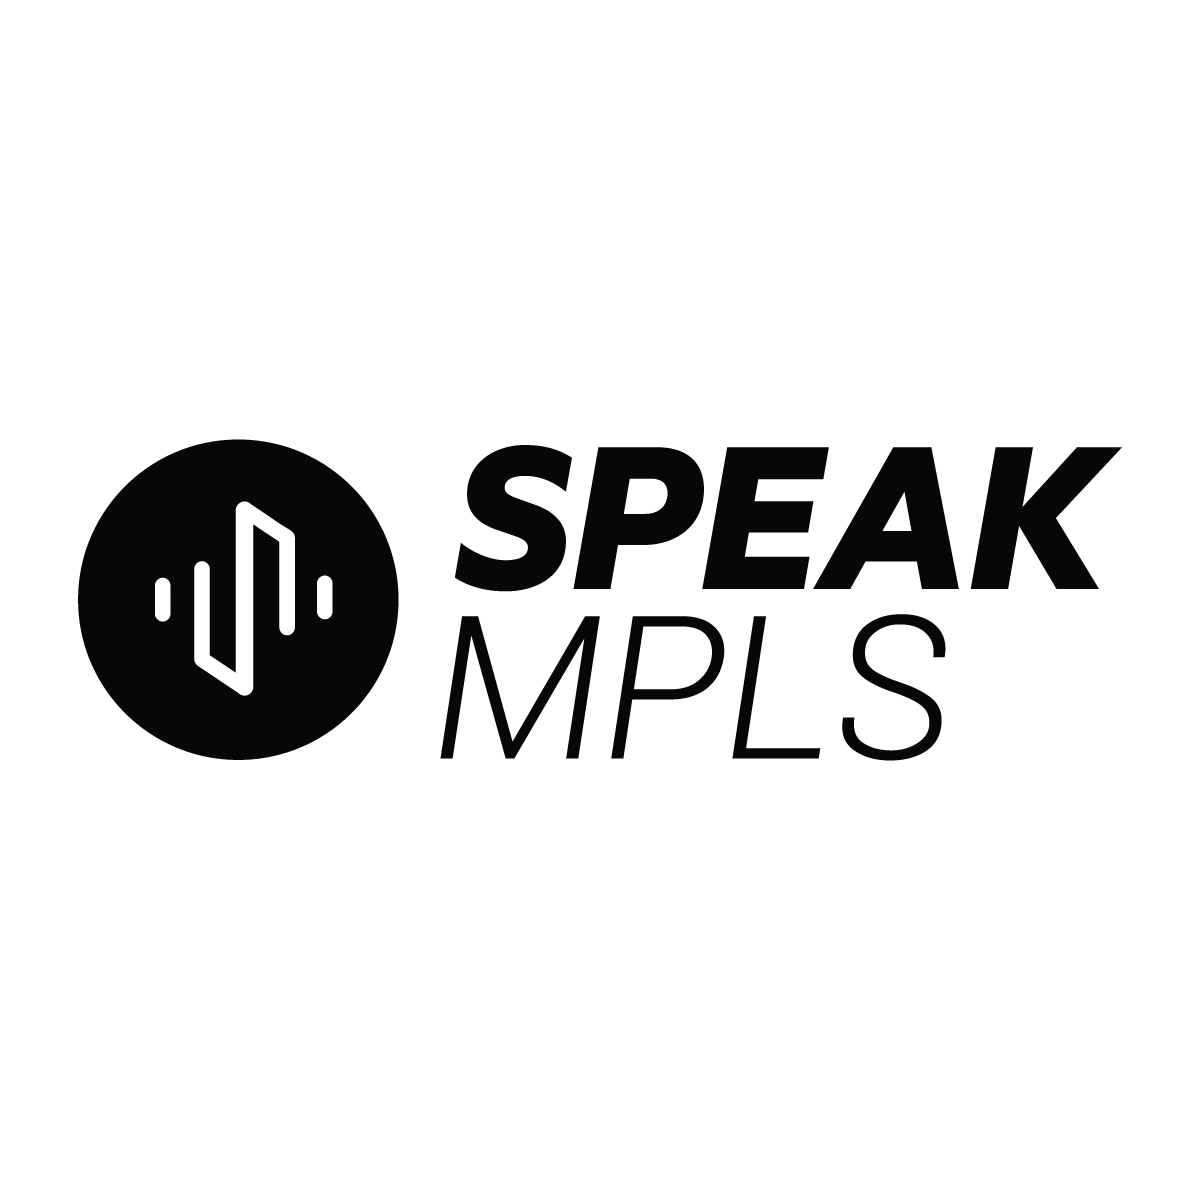 SPEAK MPLS